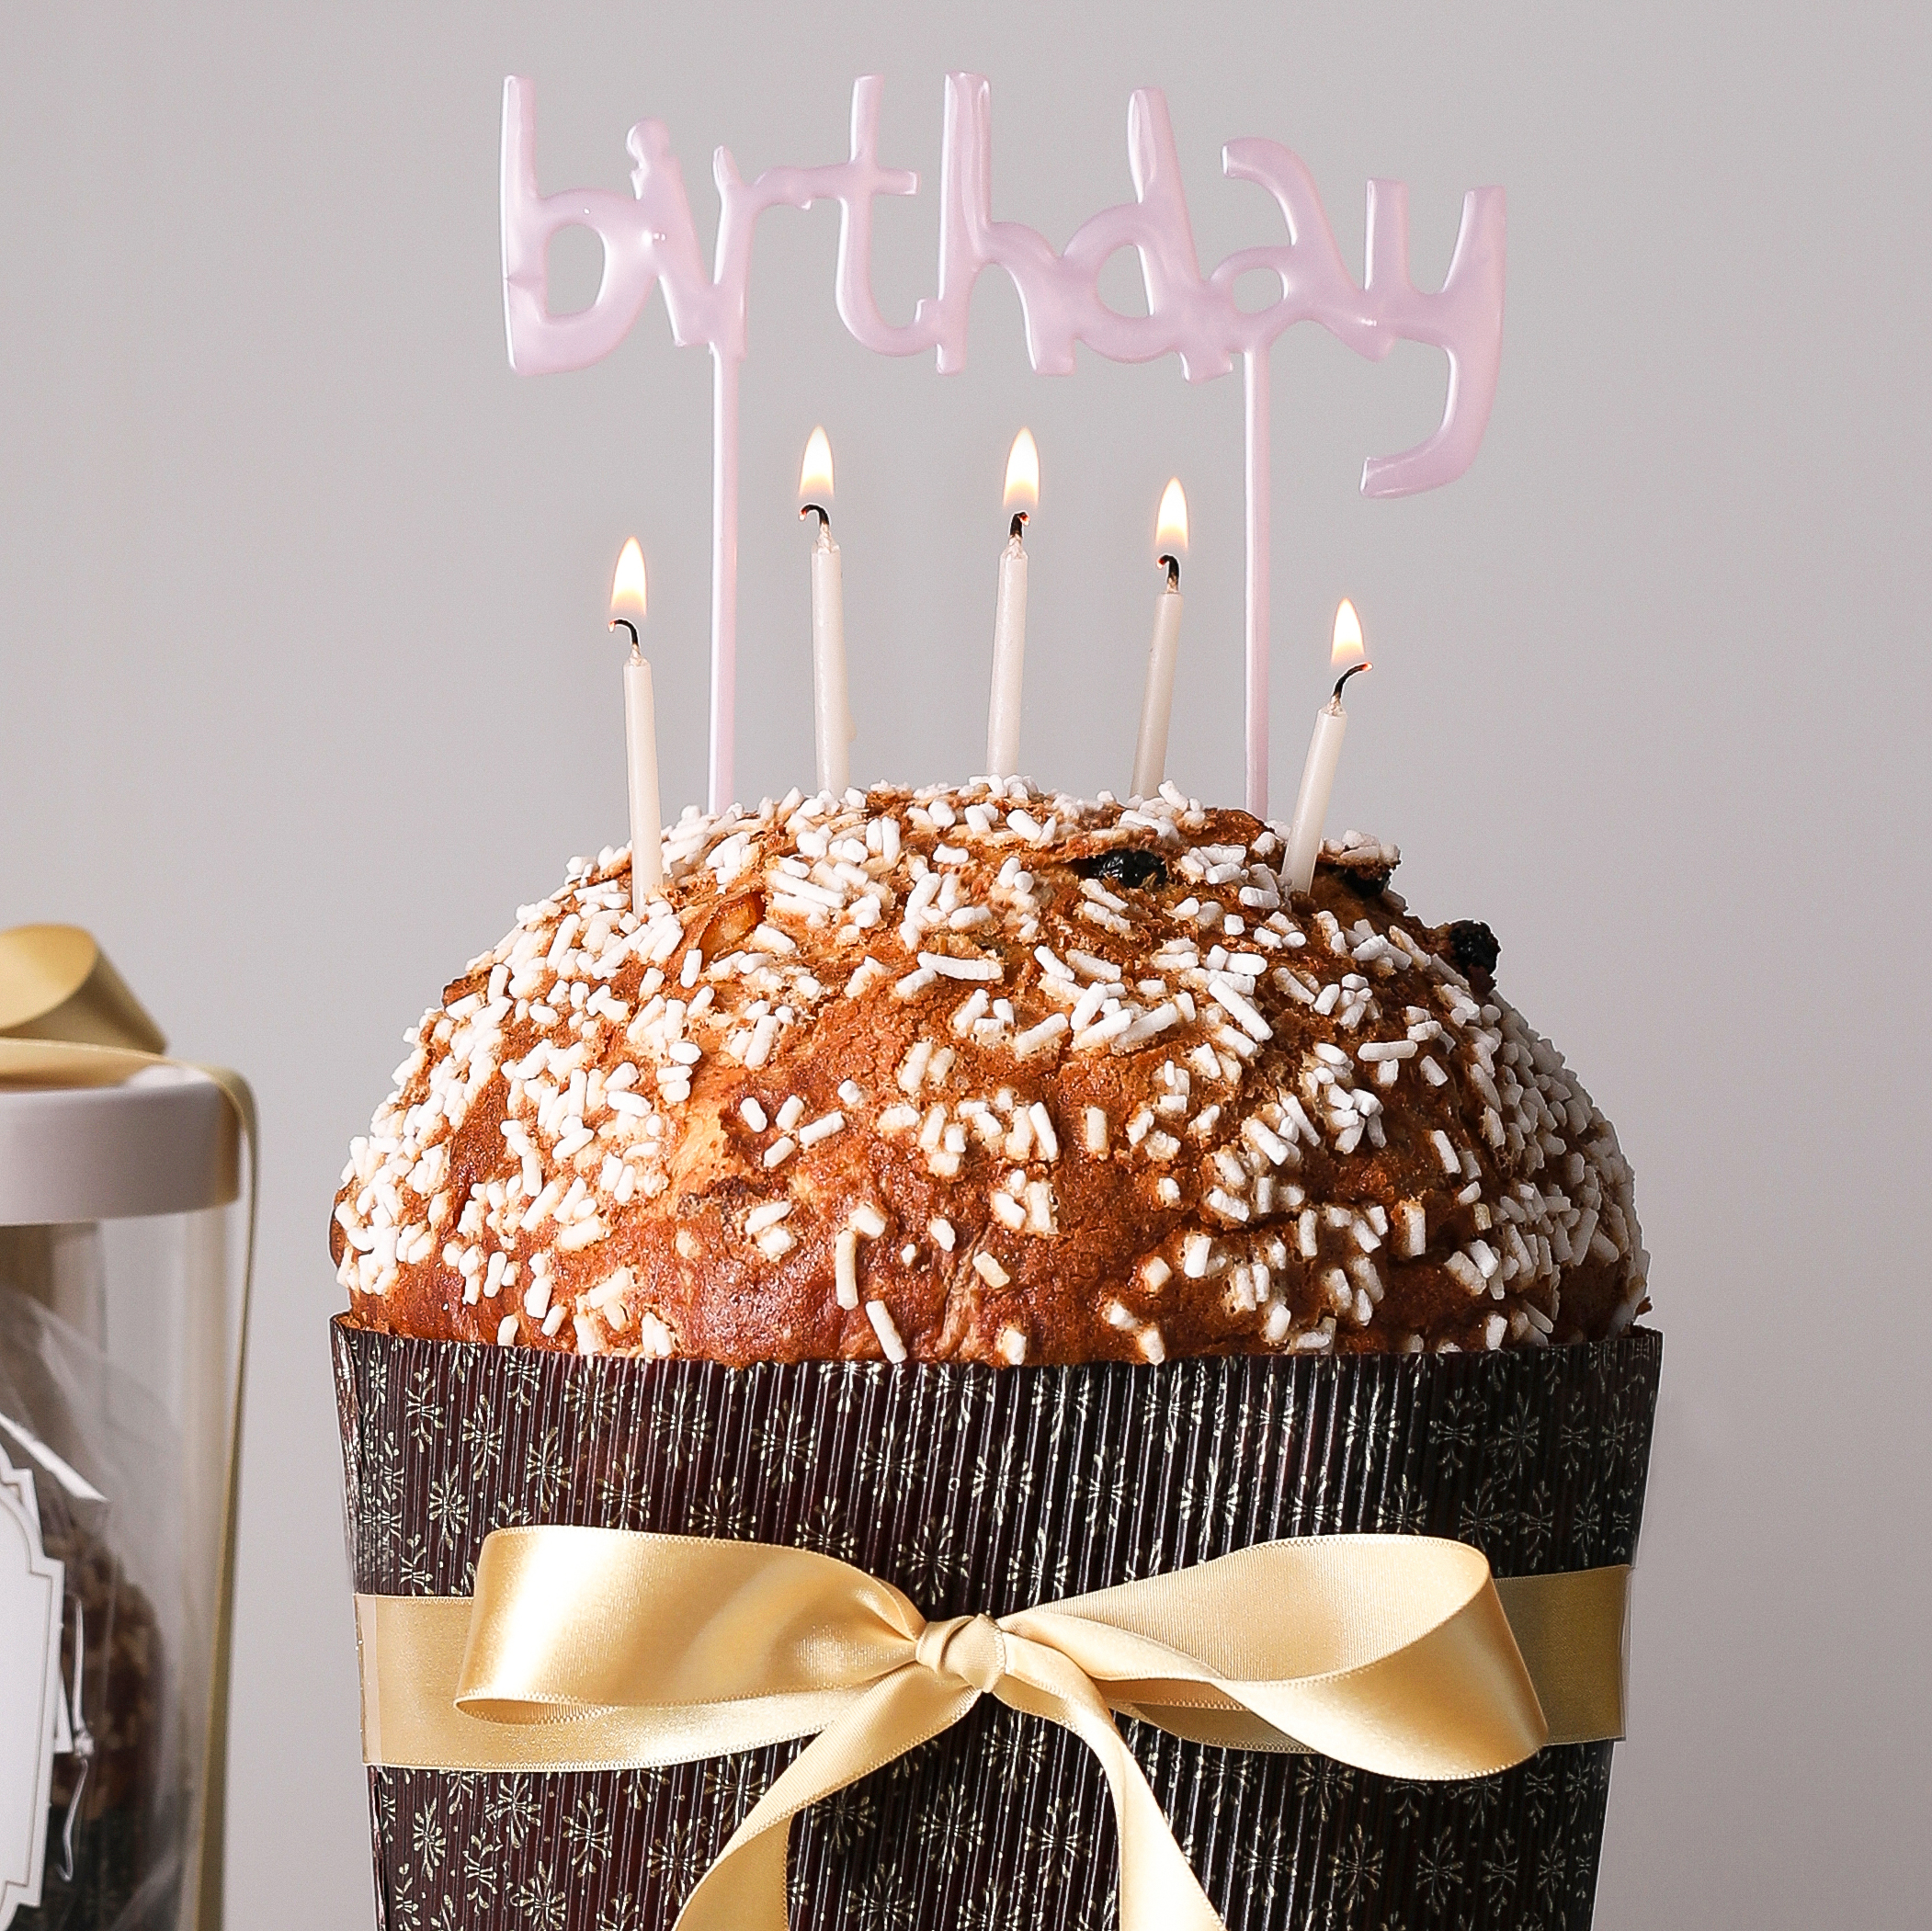 건강한 파네토네 1Kg (생일 감사 선물 파티 케이크)